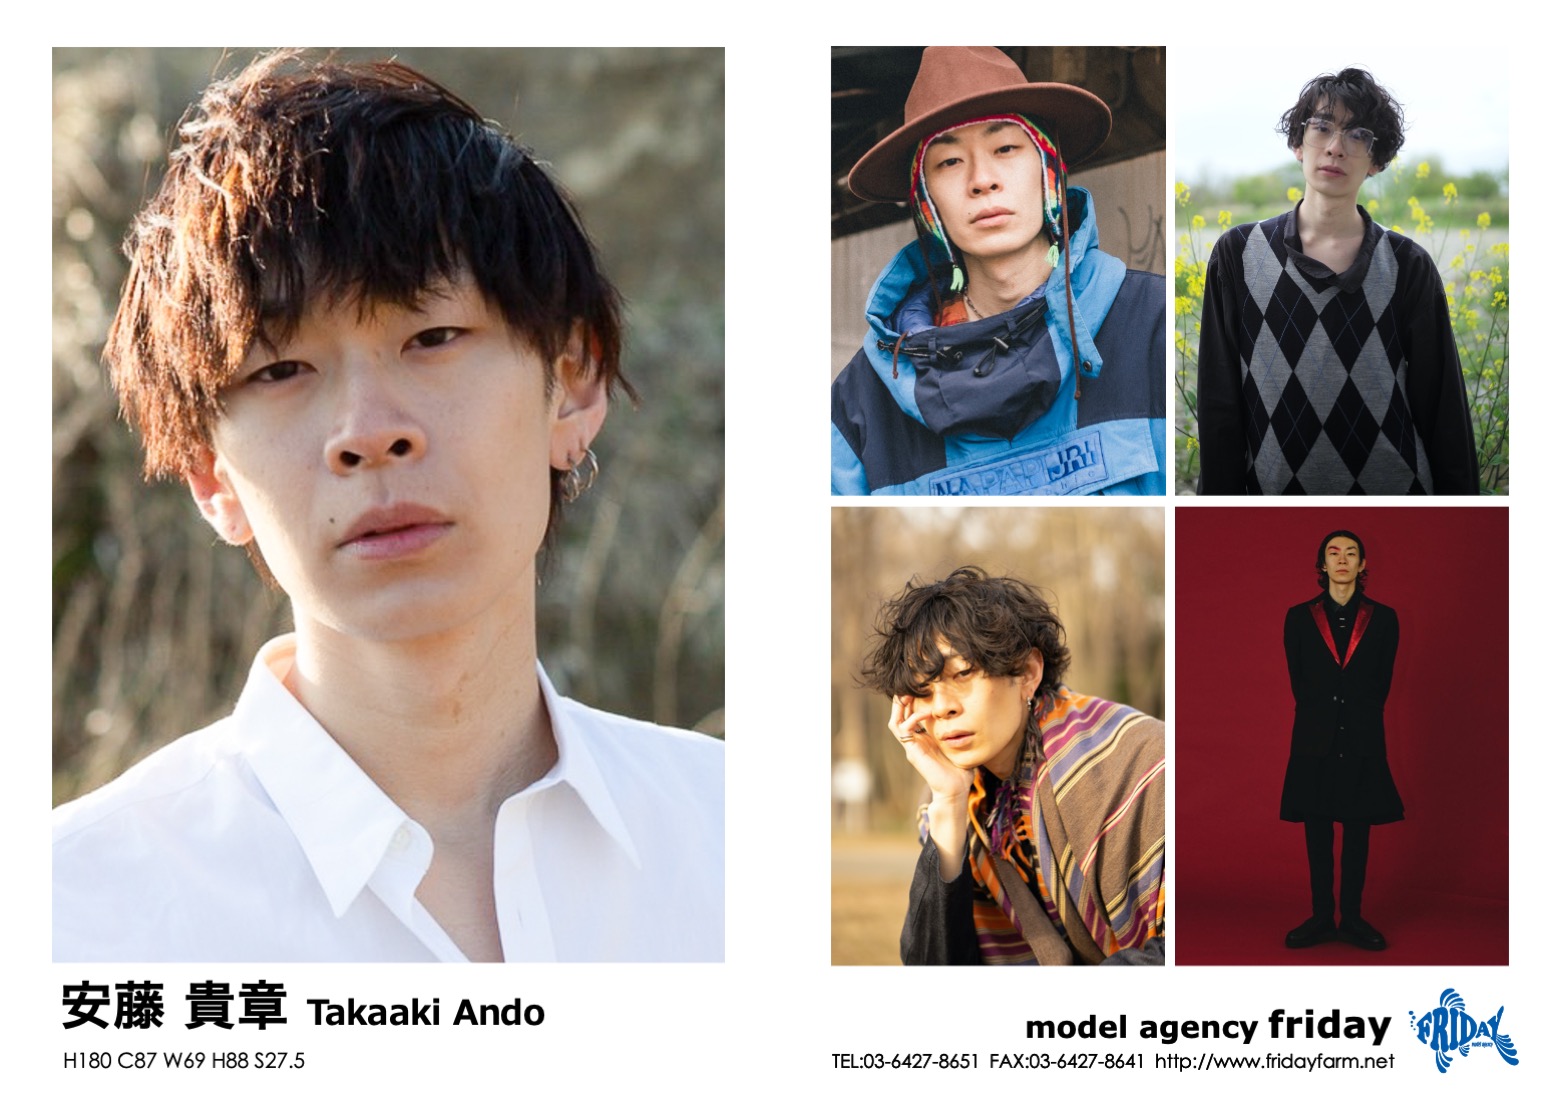 安藤 貴章 - Takaaki Ando | model agency friday